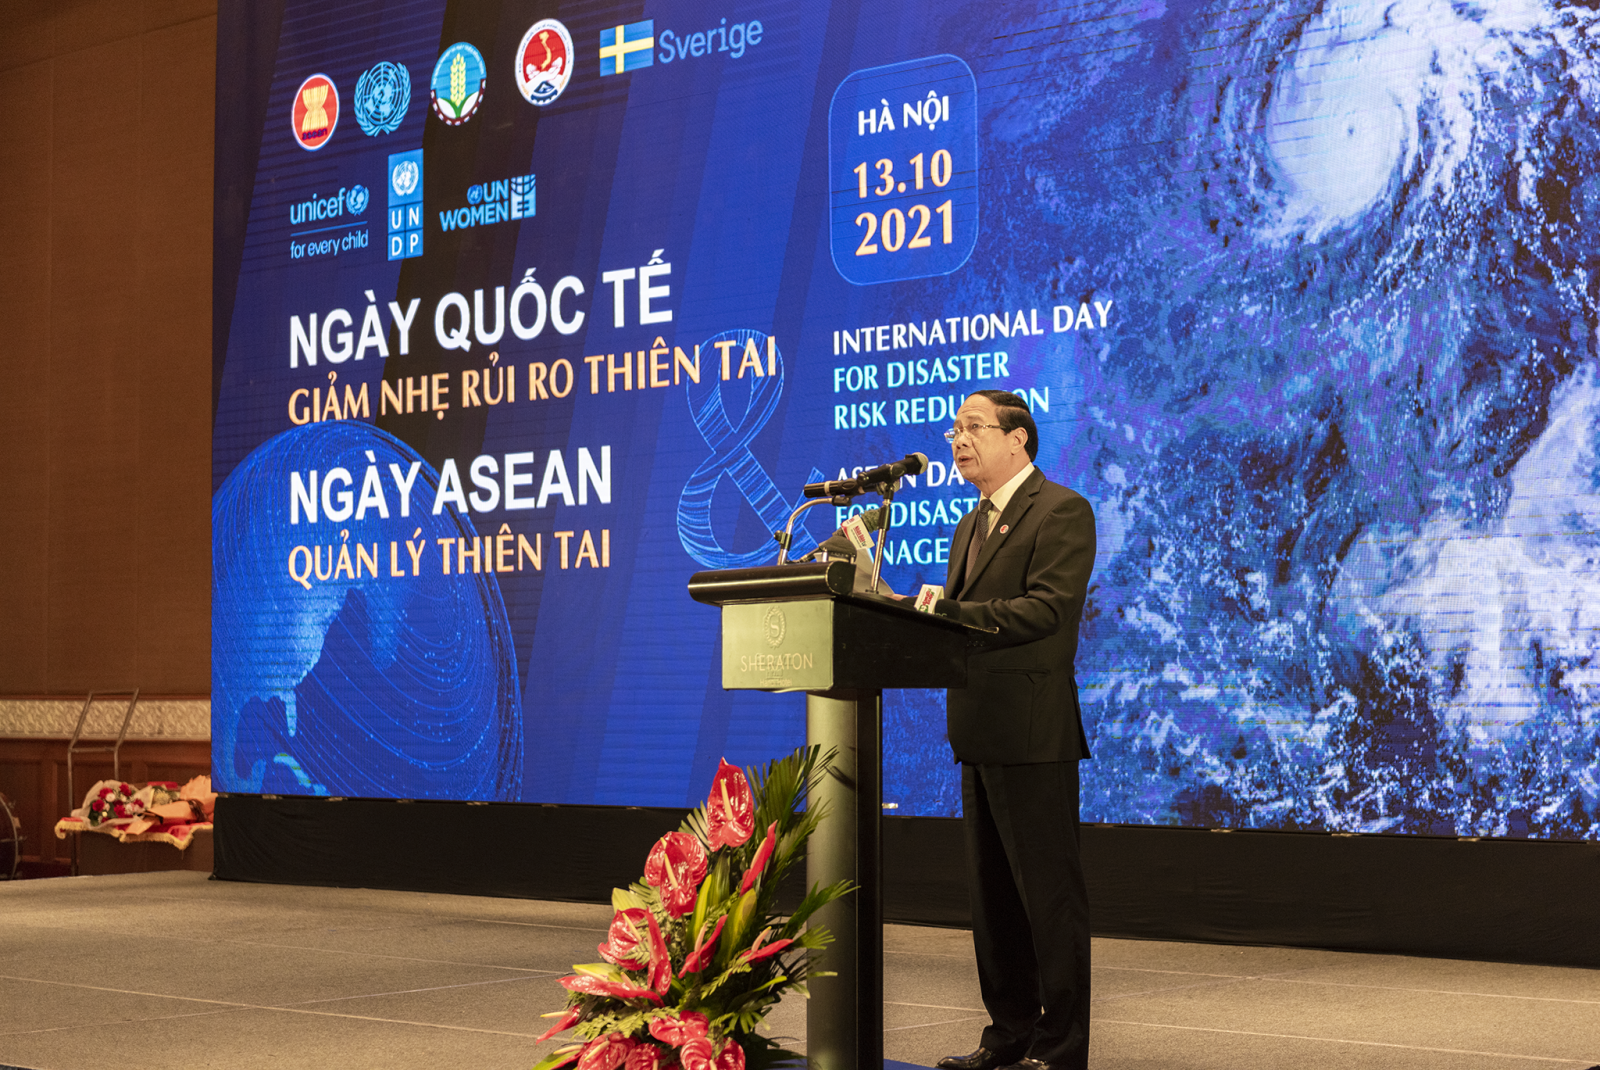 Phó Thủ tướng Lê Văn Thành: Chính phủ Việt Nam khẳng định luôn coi phòng, chống thiên tai là nhiệm vụ hàng đầu